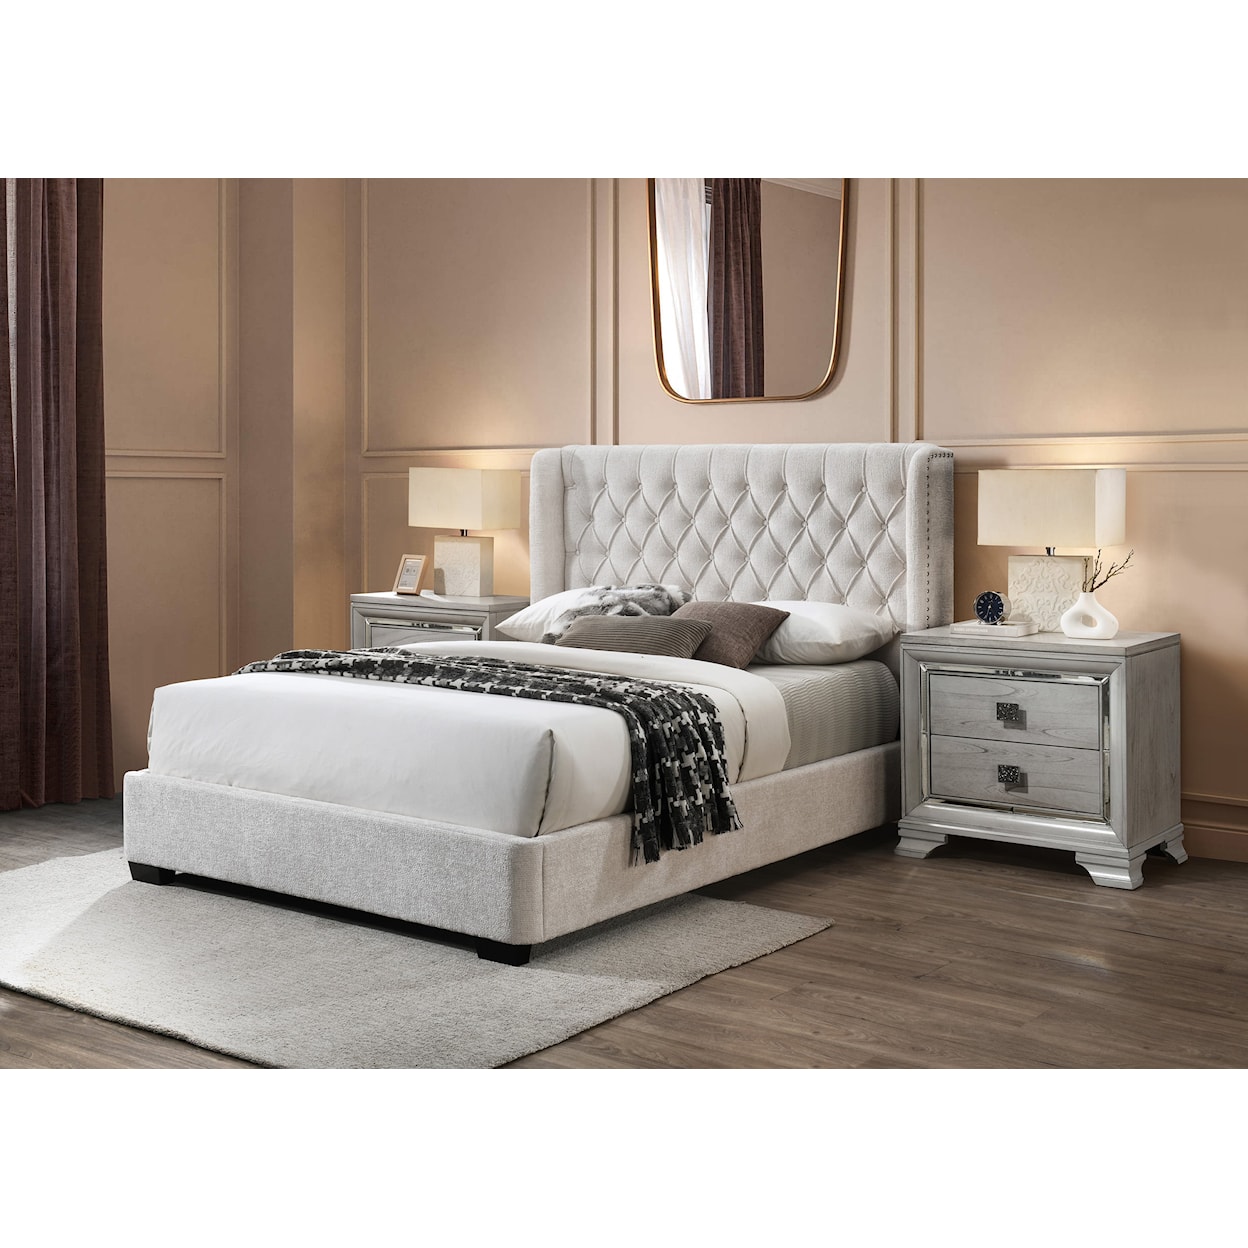 CM DAPHNE King Upholstered Bed